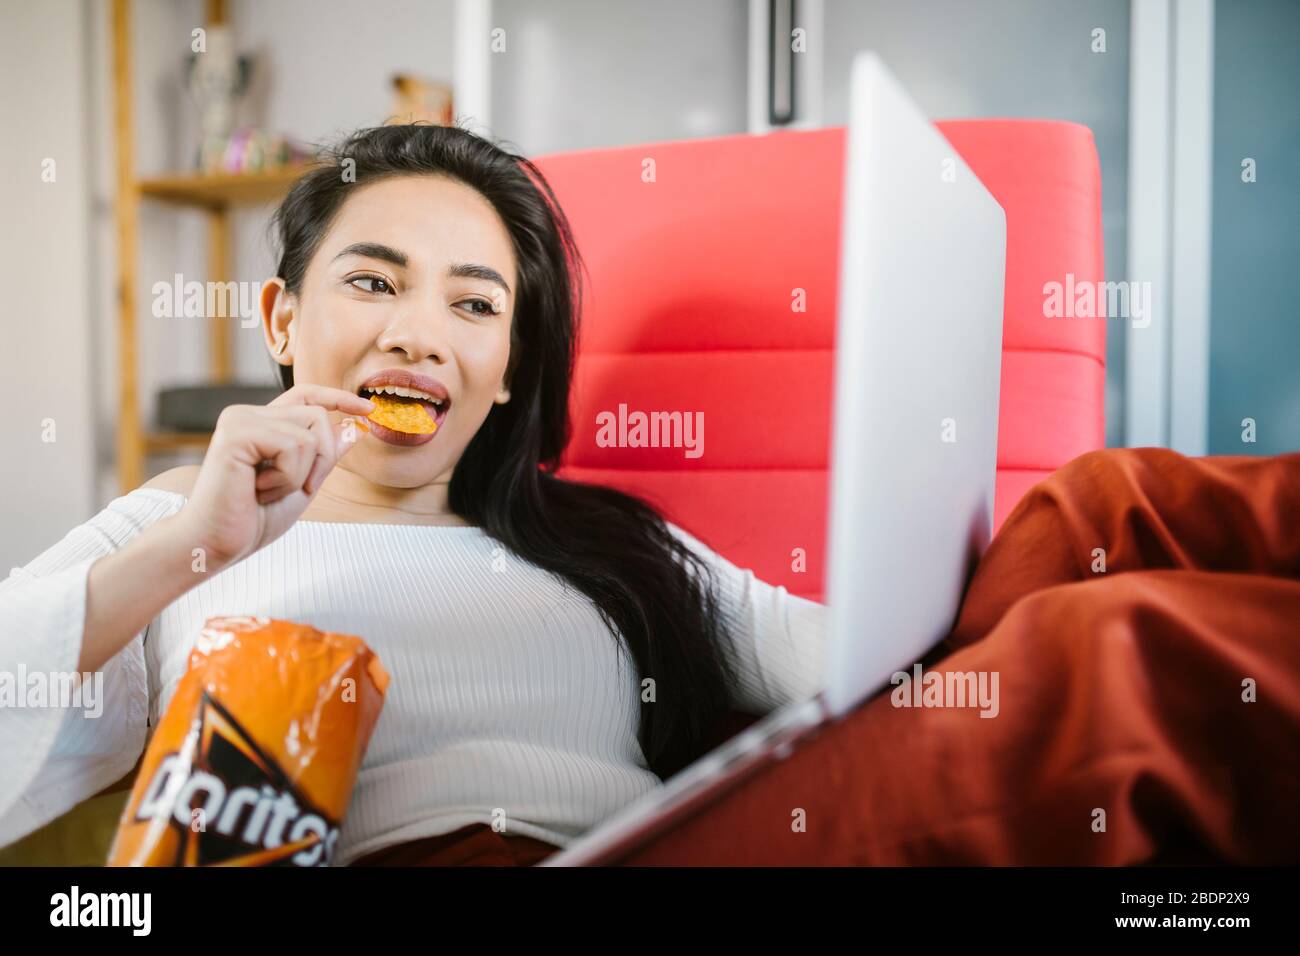 Beautiful asian woman eating Doritos. Stock Photo